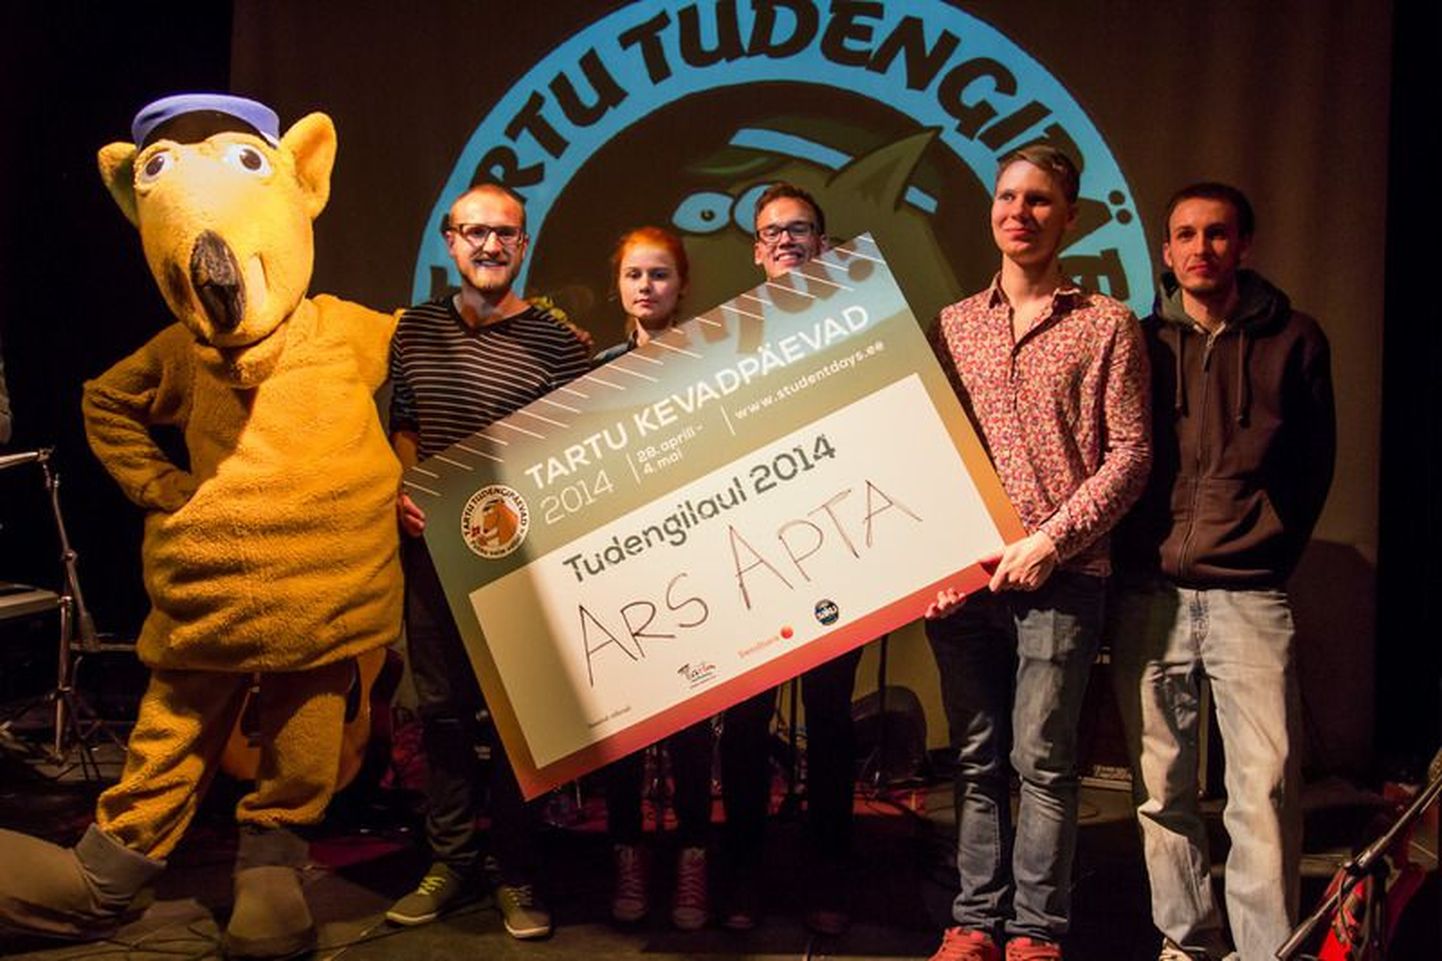 Tartu Kevadpäevade laulukonkurss „Tudengilaul 2015“ avas demovooru.